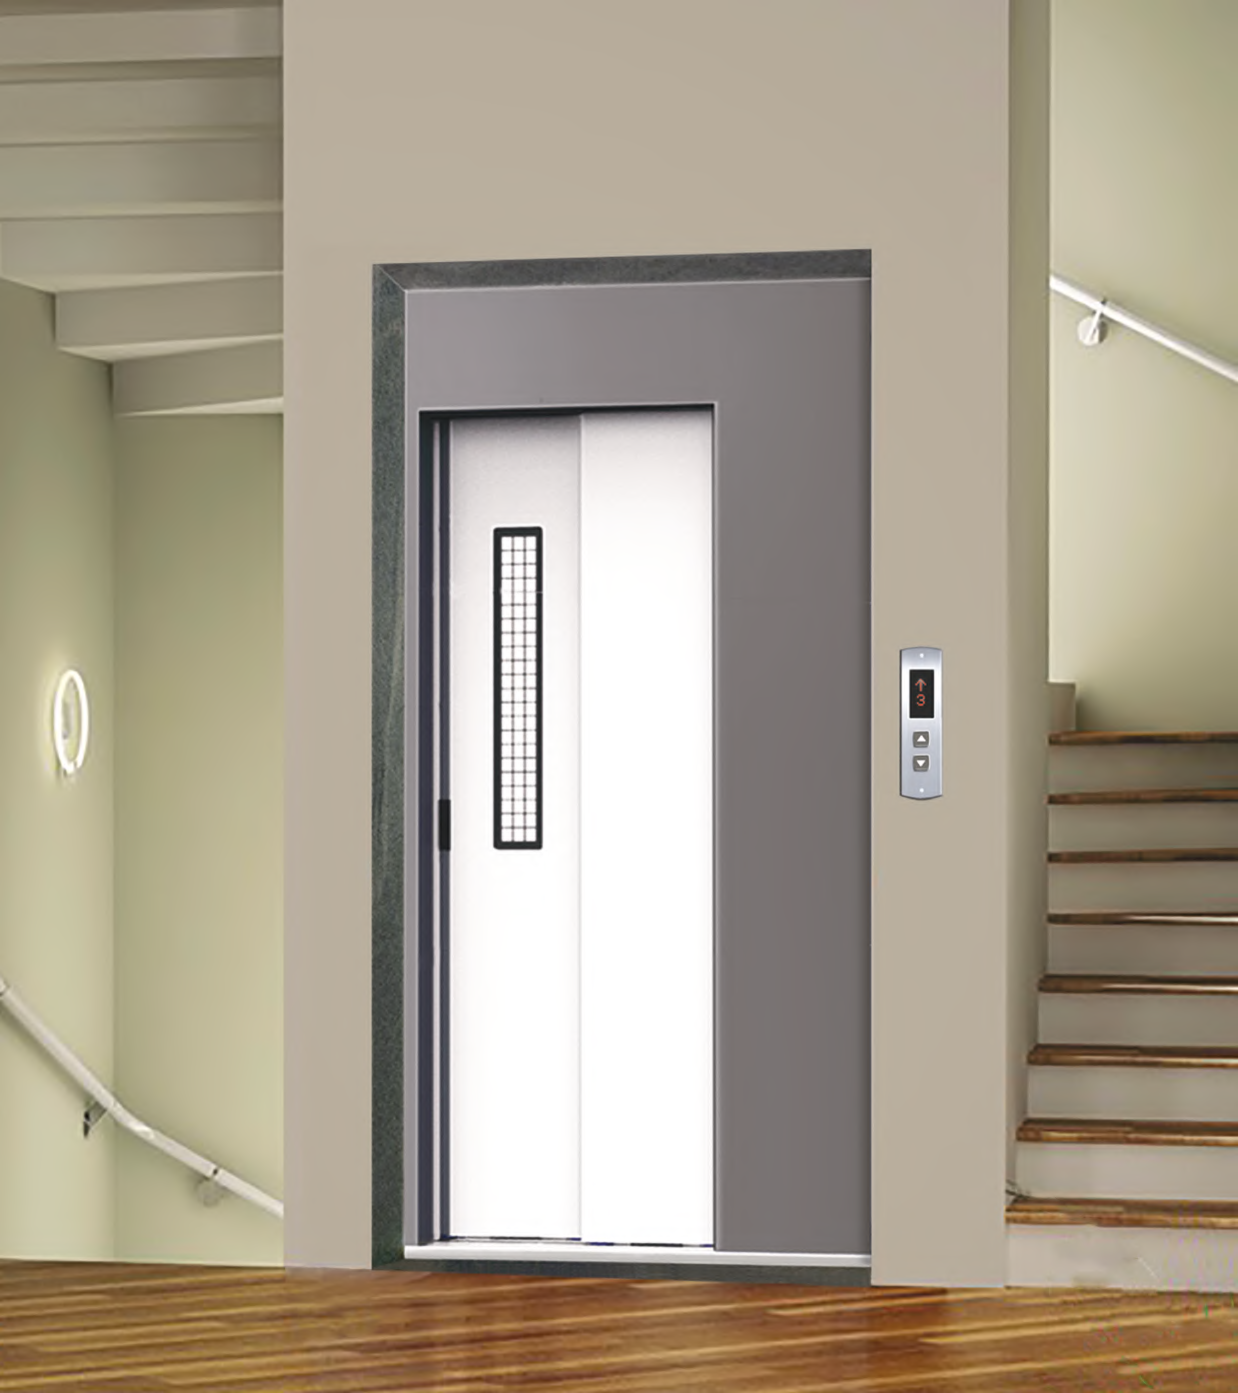 Manual door lift